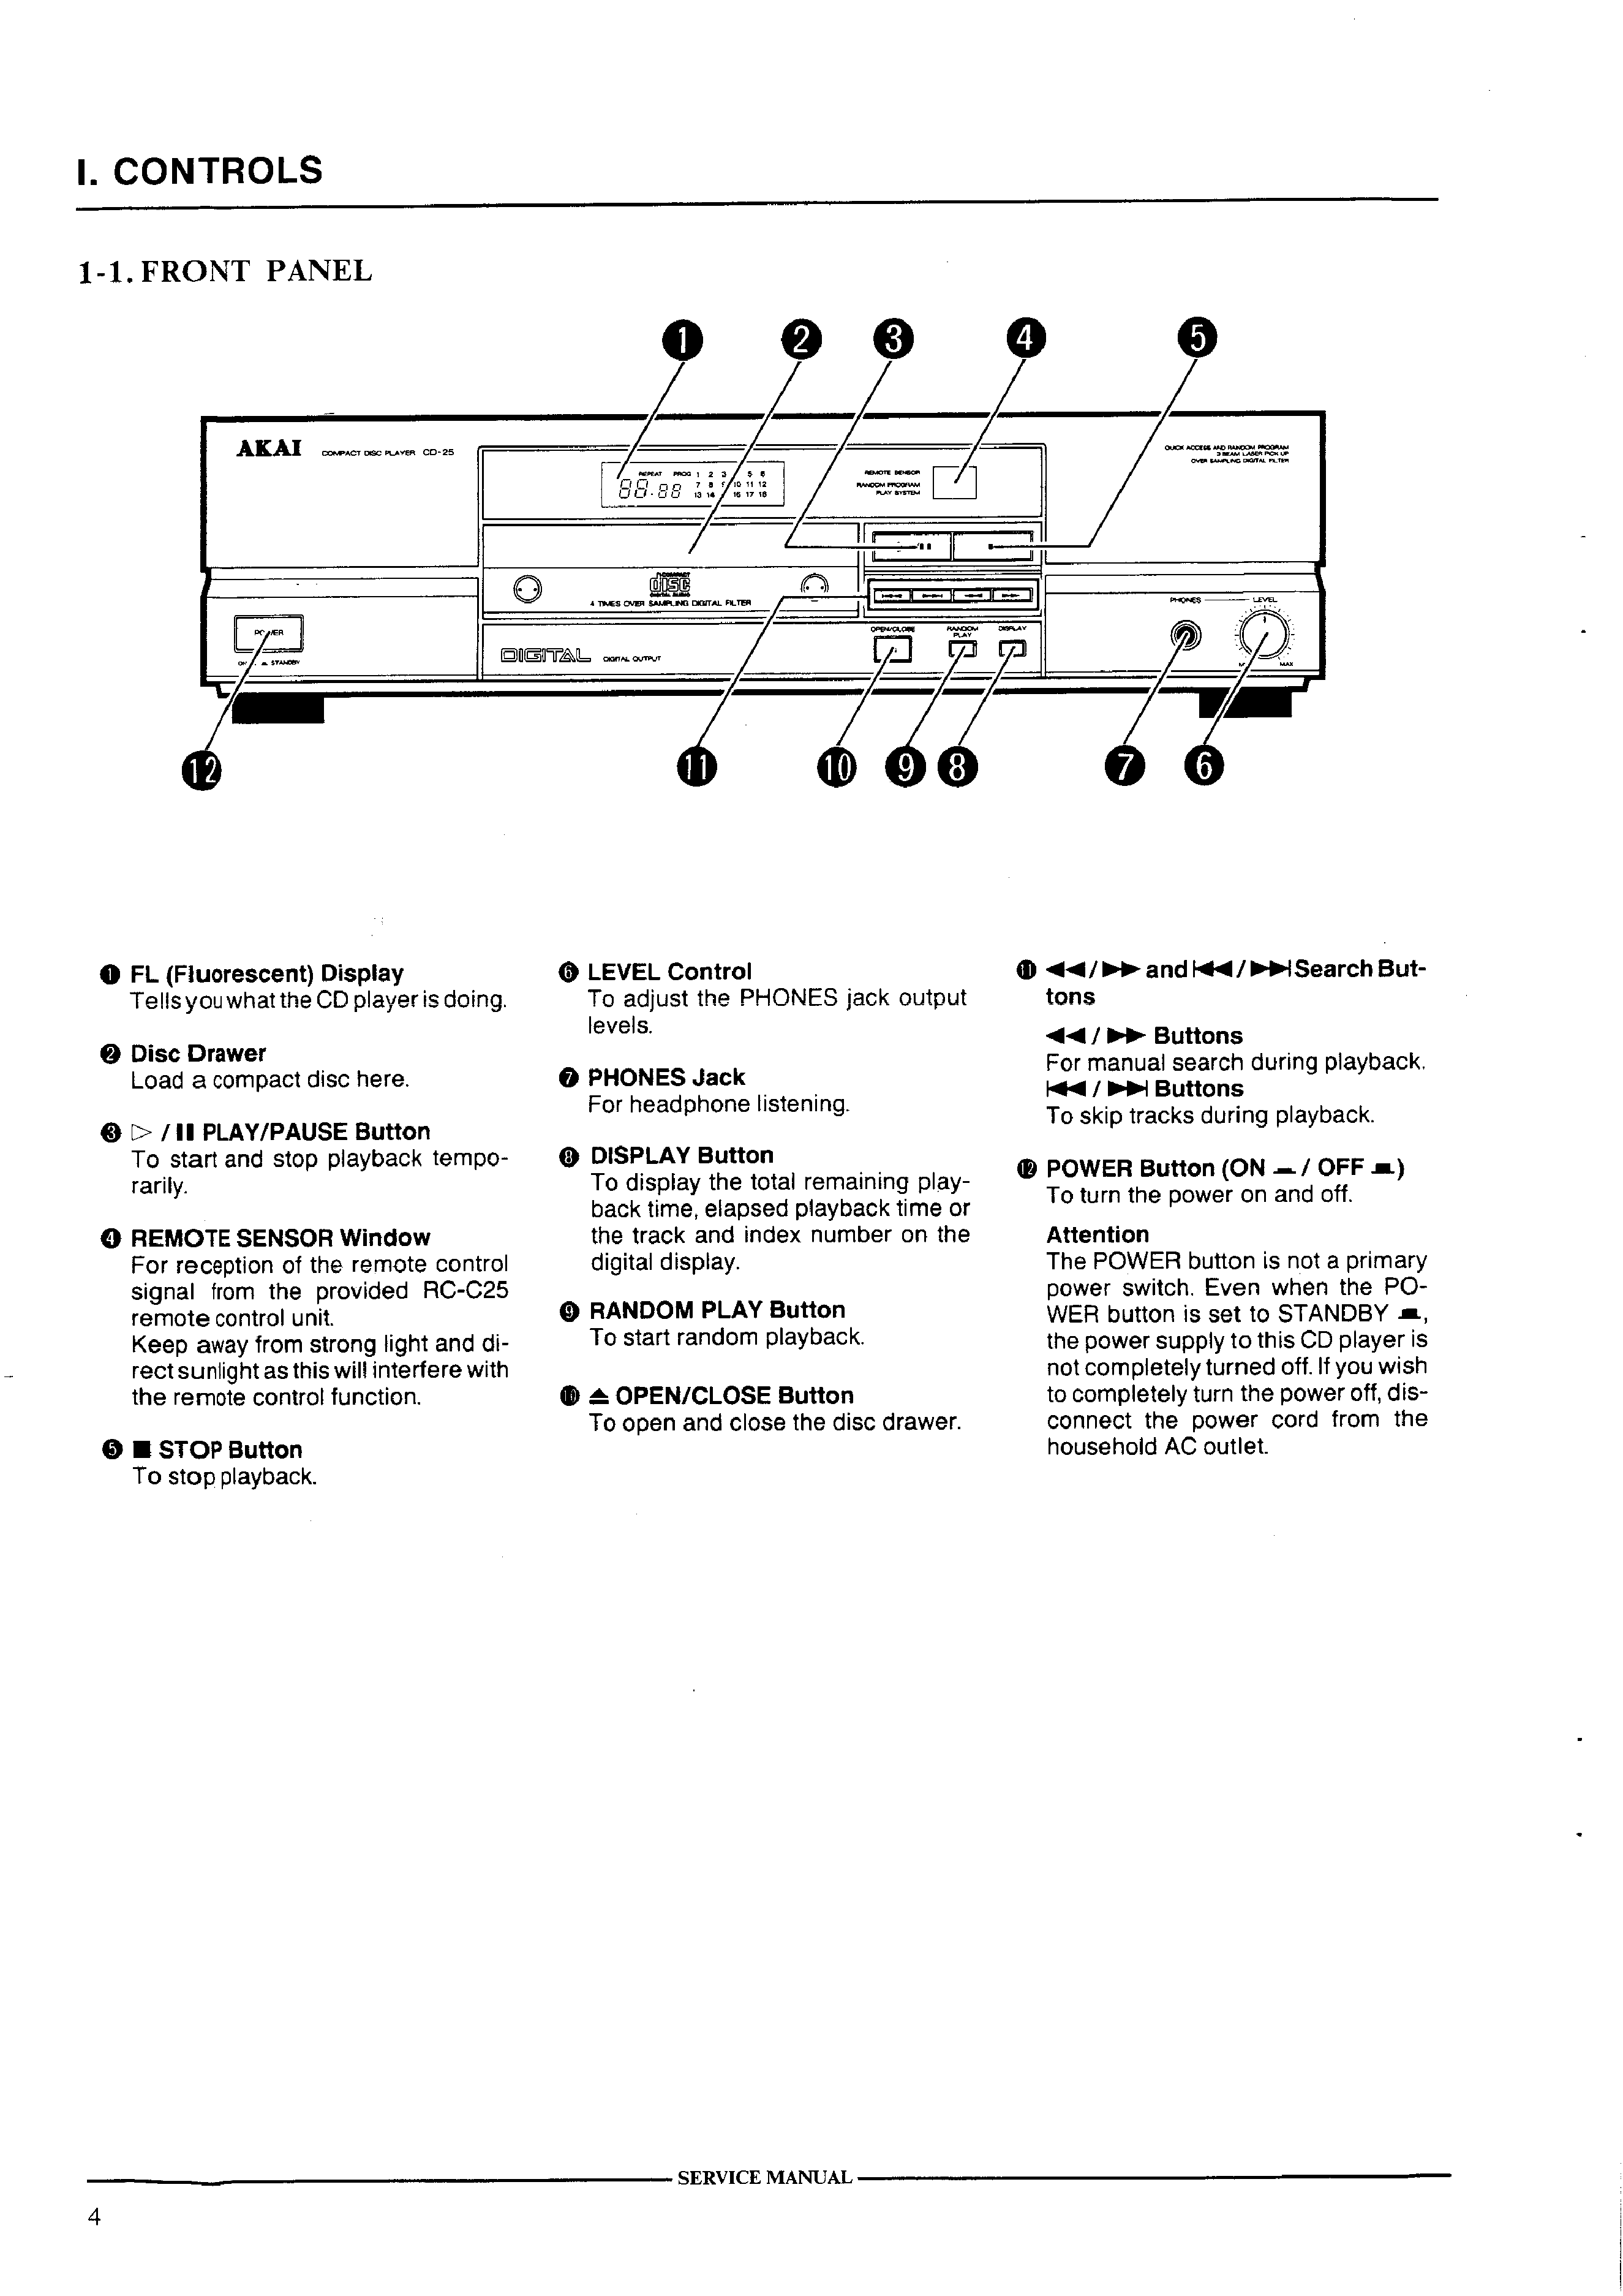 Original Service Manual esquema eléctrico Akai cd-25 